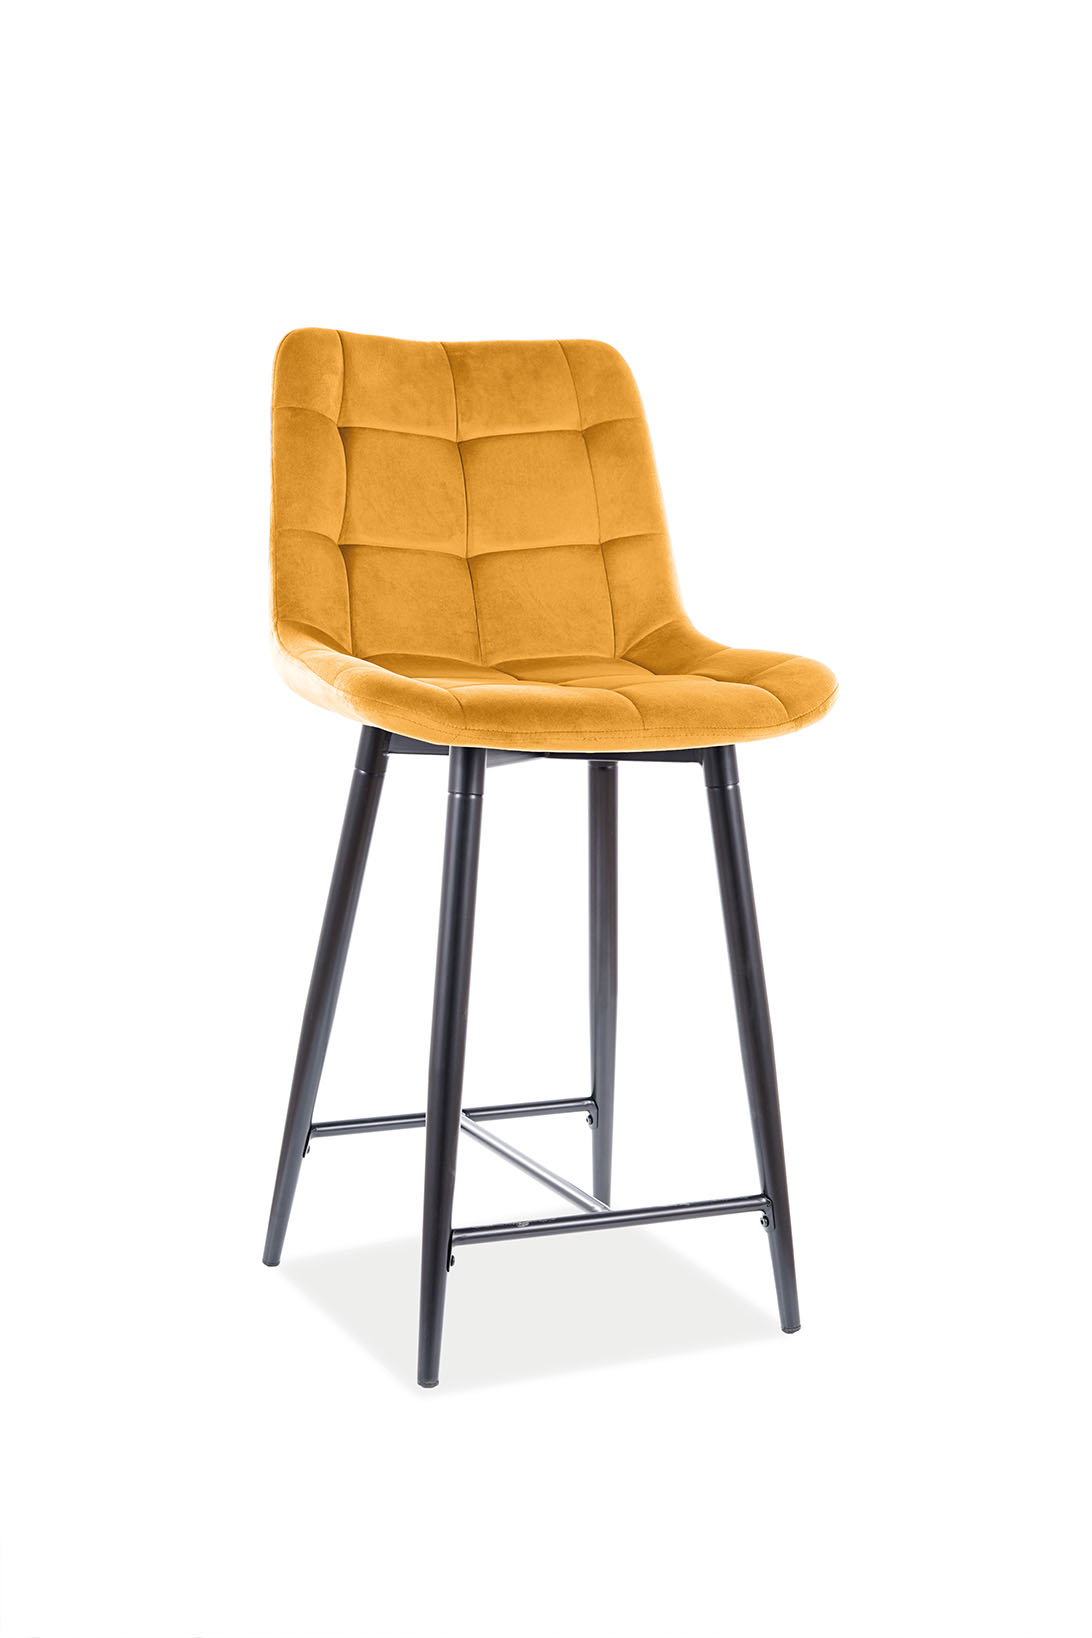 E-shop KIK barová stolička, Bluvel 68 - žltá